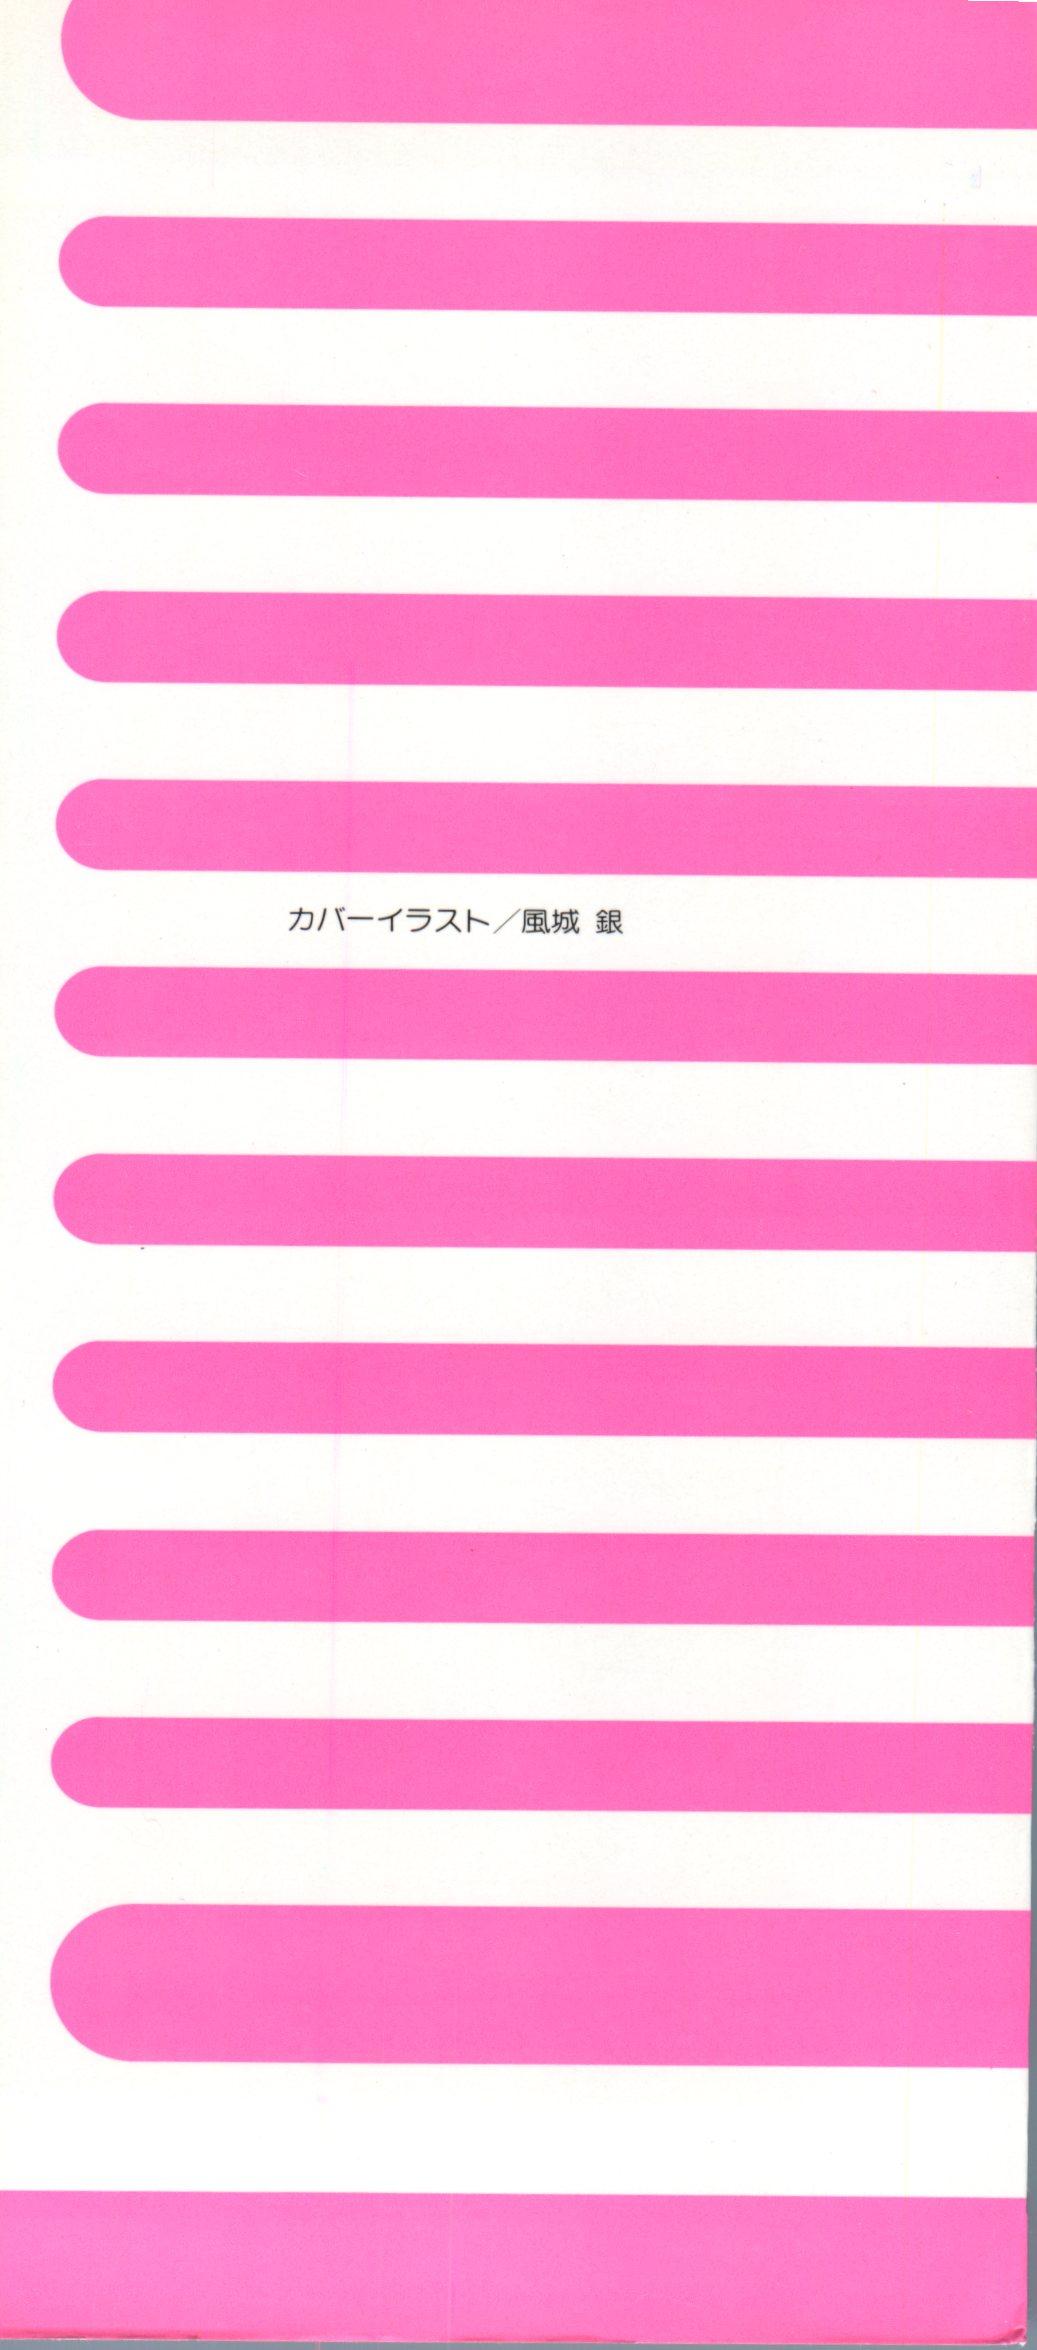 Doujin Anthology Bishoujo Gumi 7 2